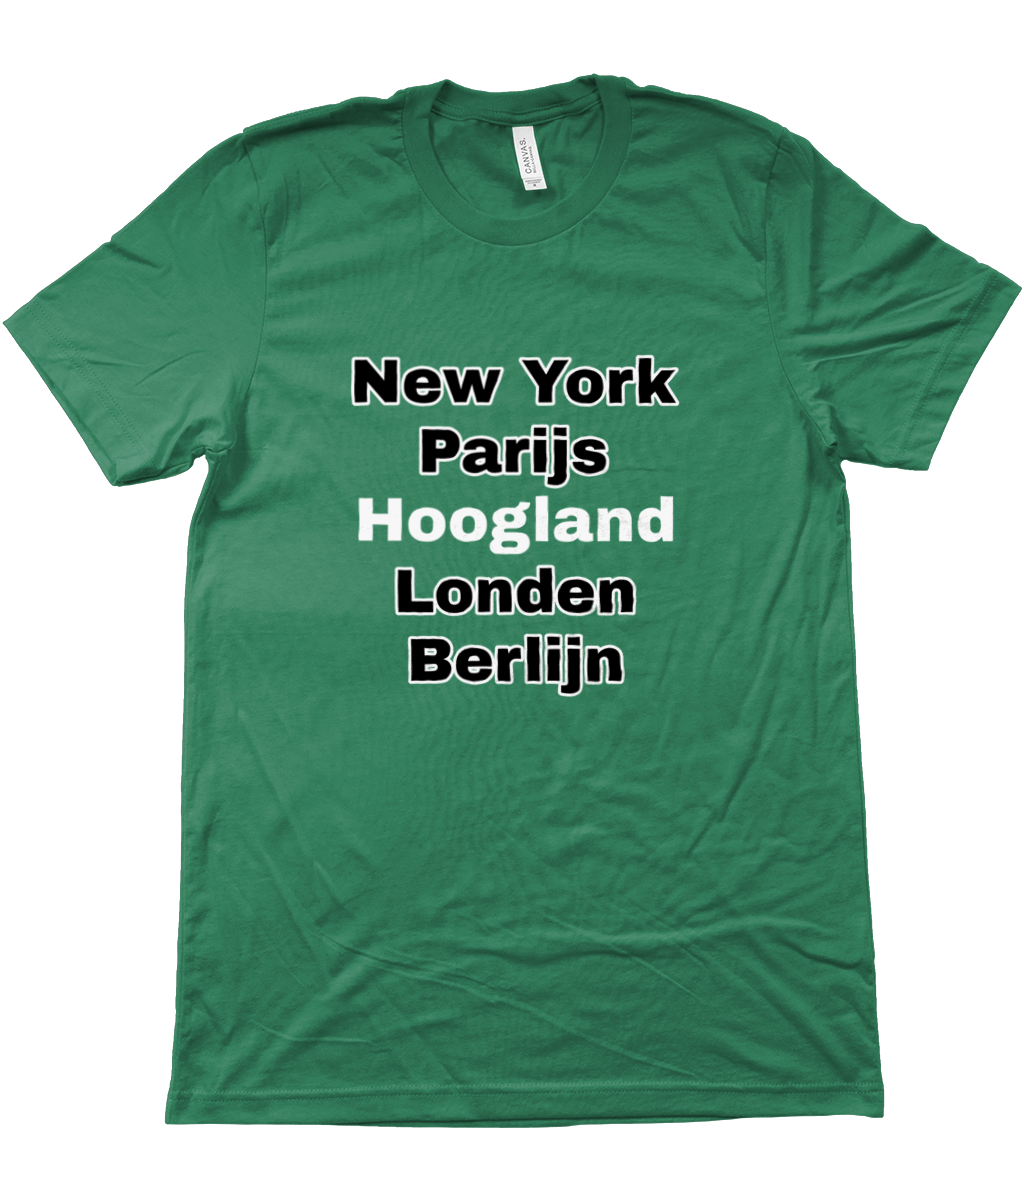 New York, Parijs, Hoogland, Londen, Berlijn - Tshirt